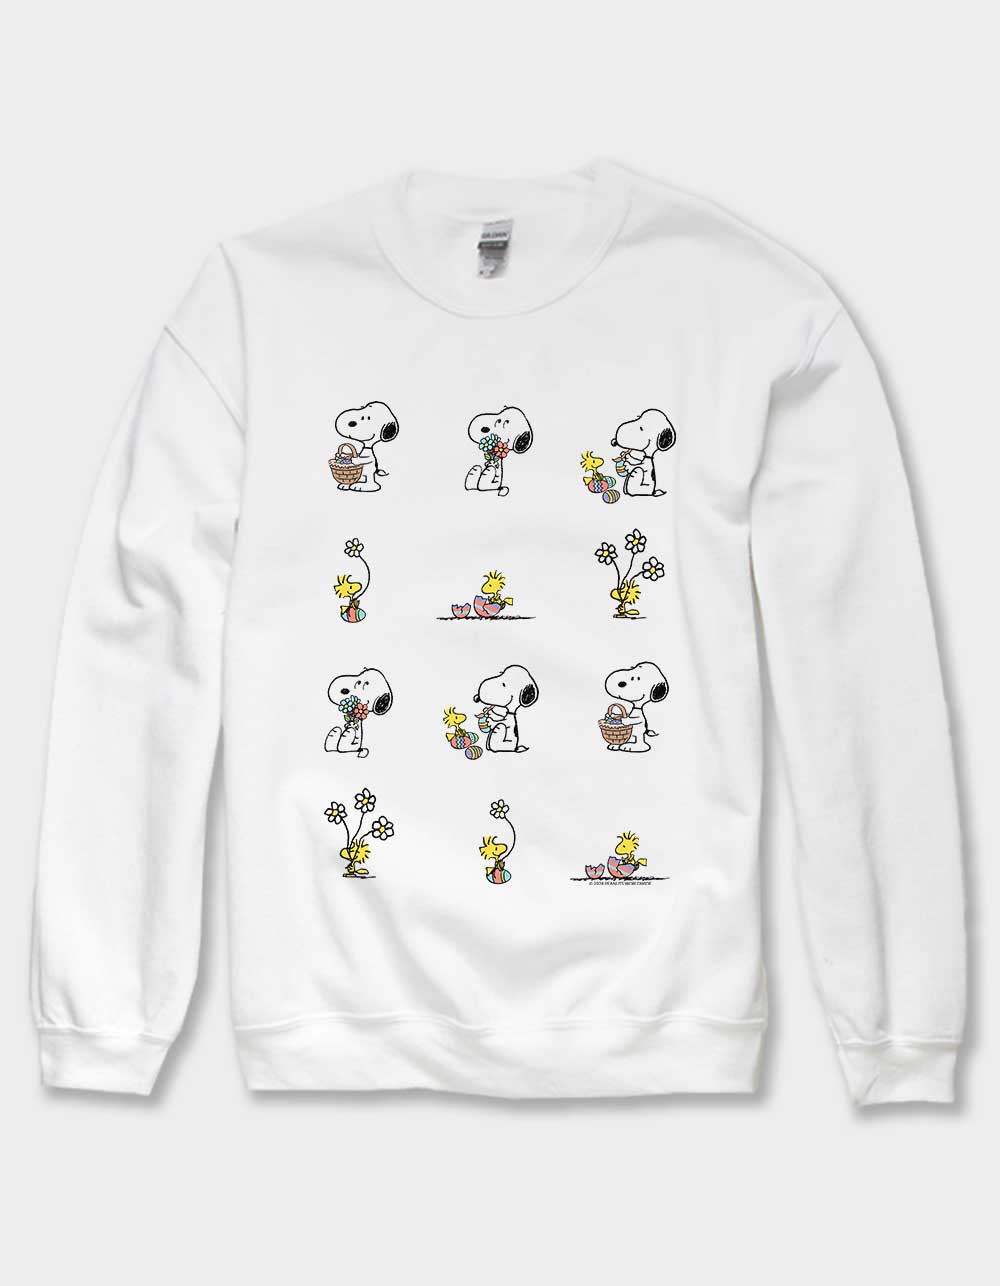 PEANUTS Snoopy Egg Hunt Unisex Crewneck Sweatshirt